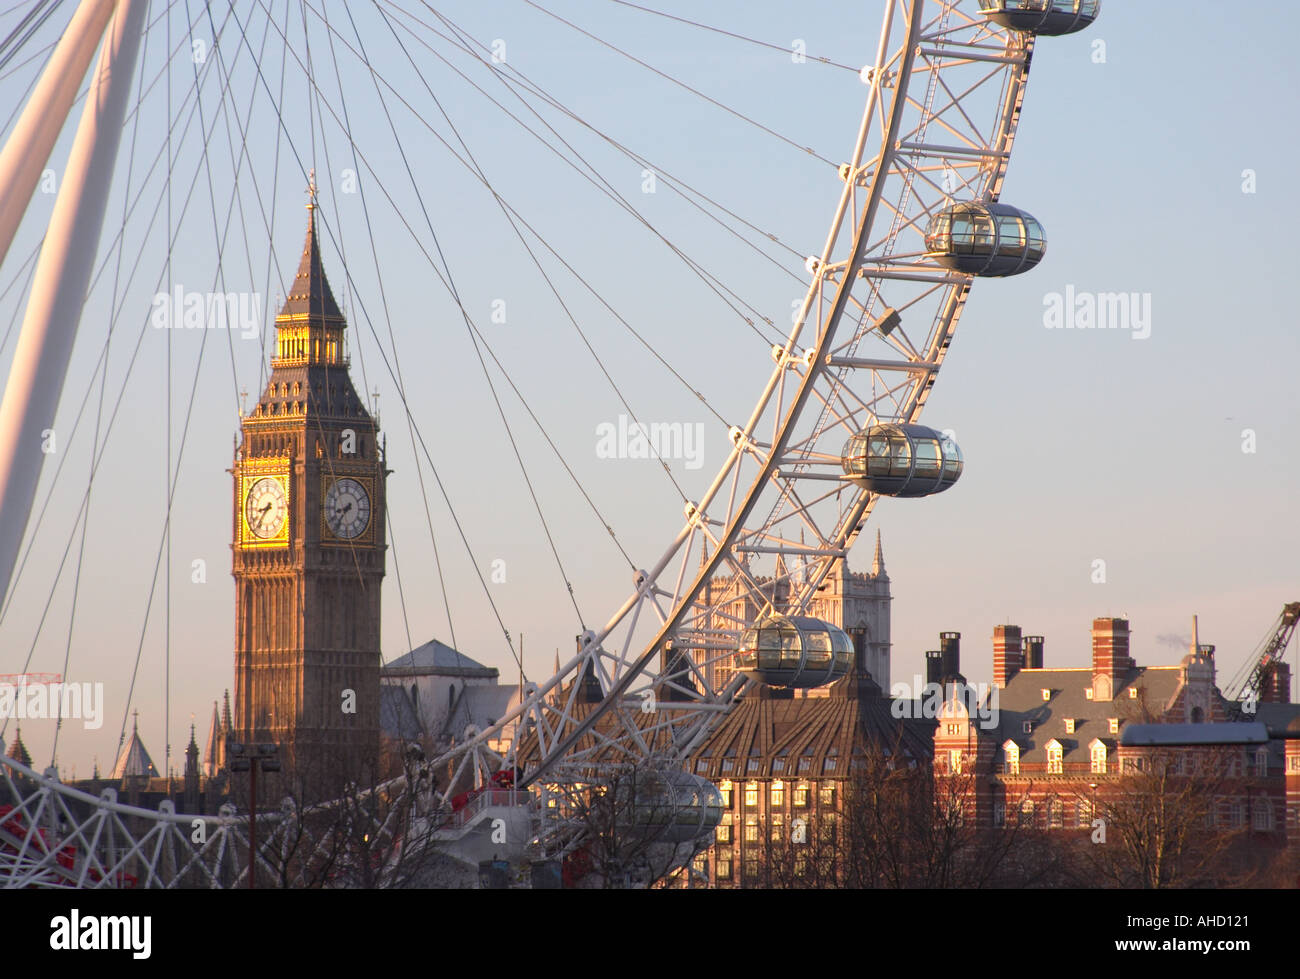 Giorno London Eye millenium ruota panoramica Ferris con il Big Ben il parlamento in background Londra Inghilterra Regno Unito Regno Unito Regno Unito Foto Stock